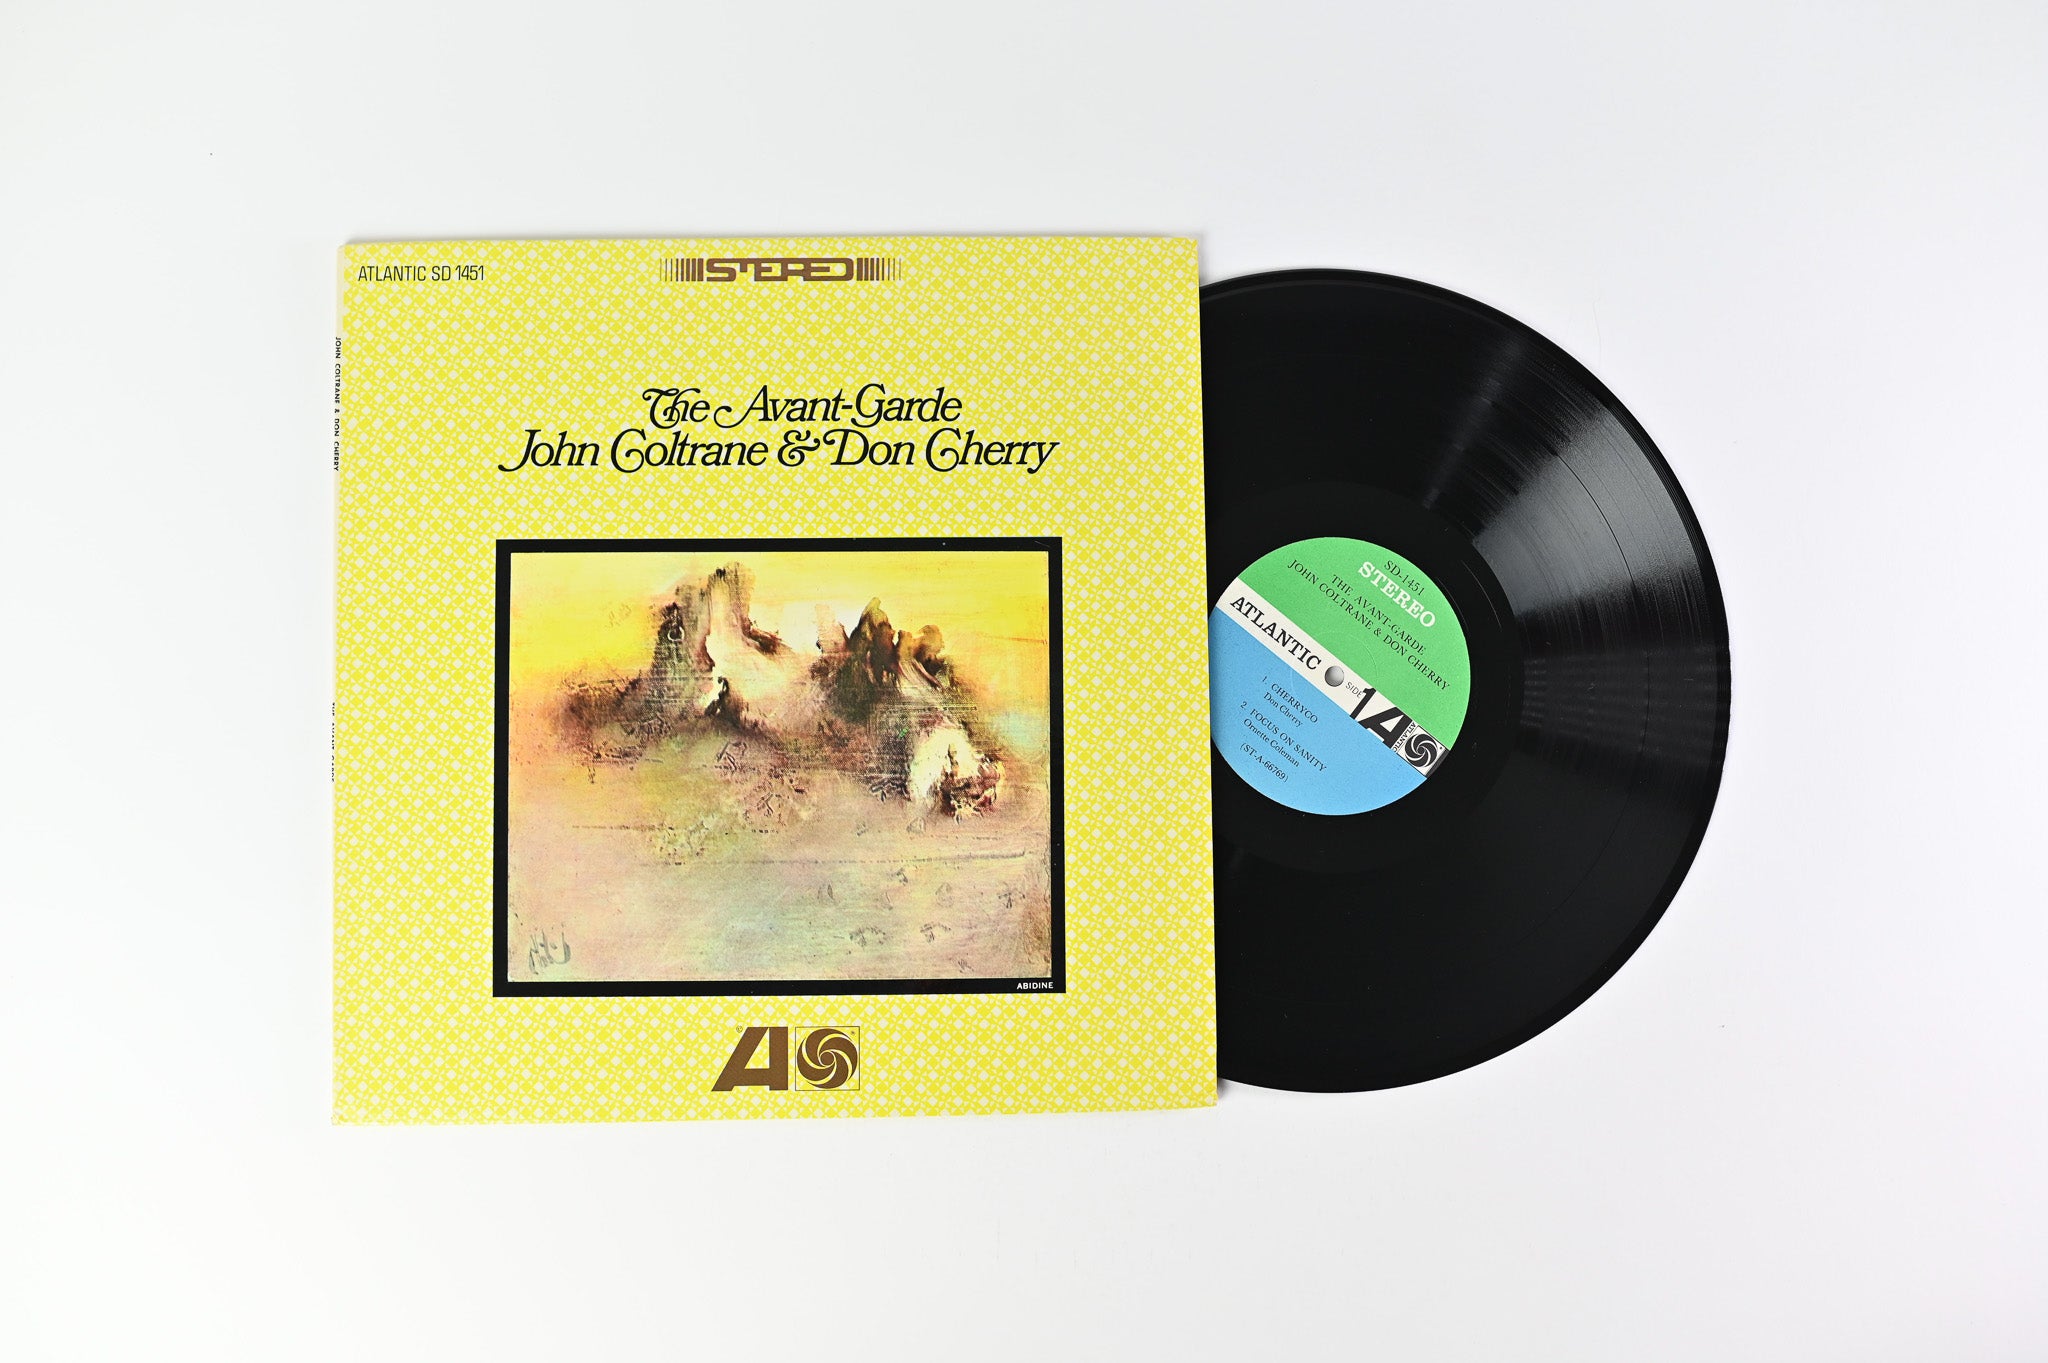 John Coltrane - The Avant-Garde on Atlantic Stereo